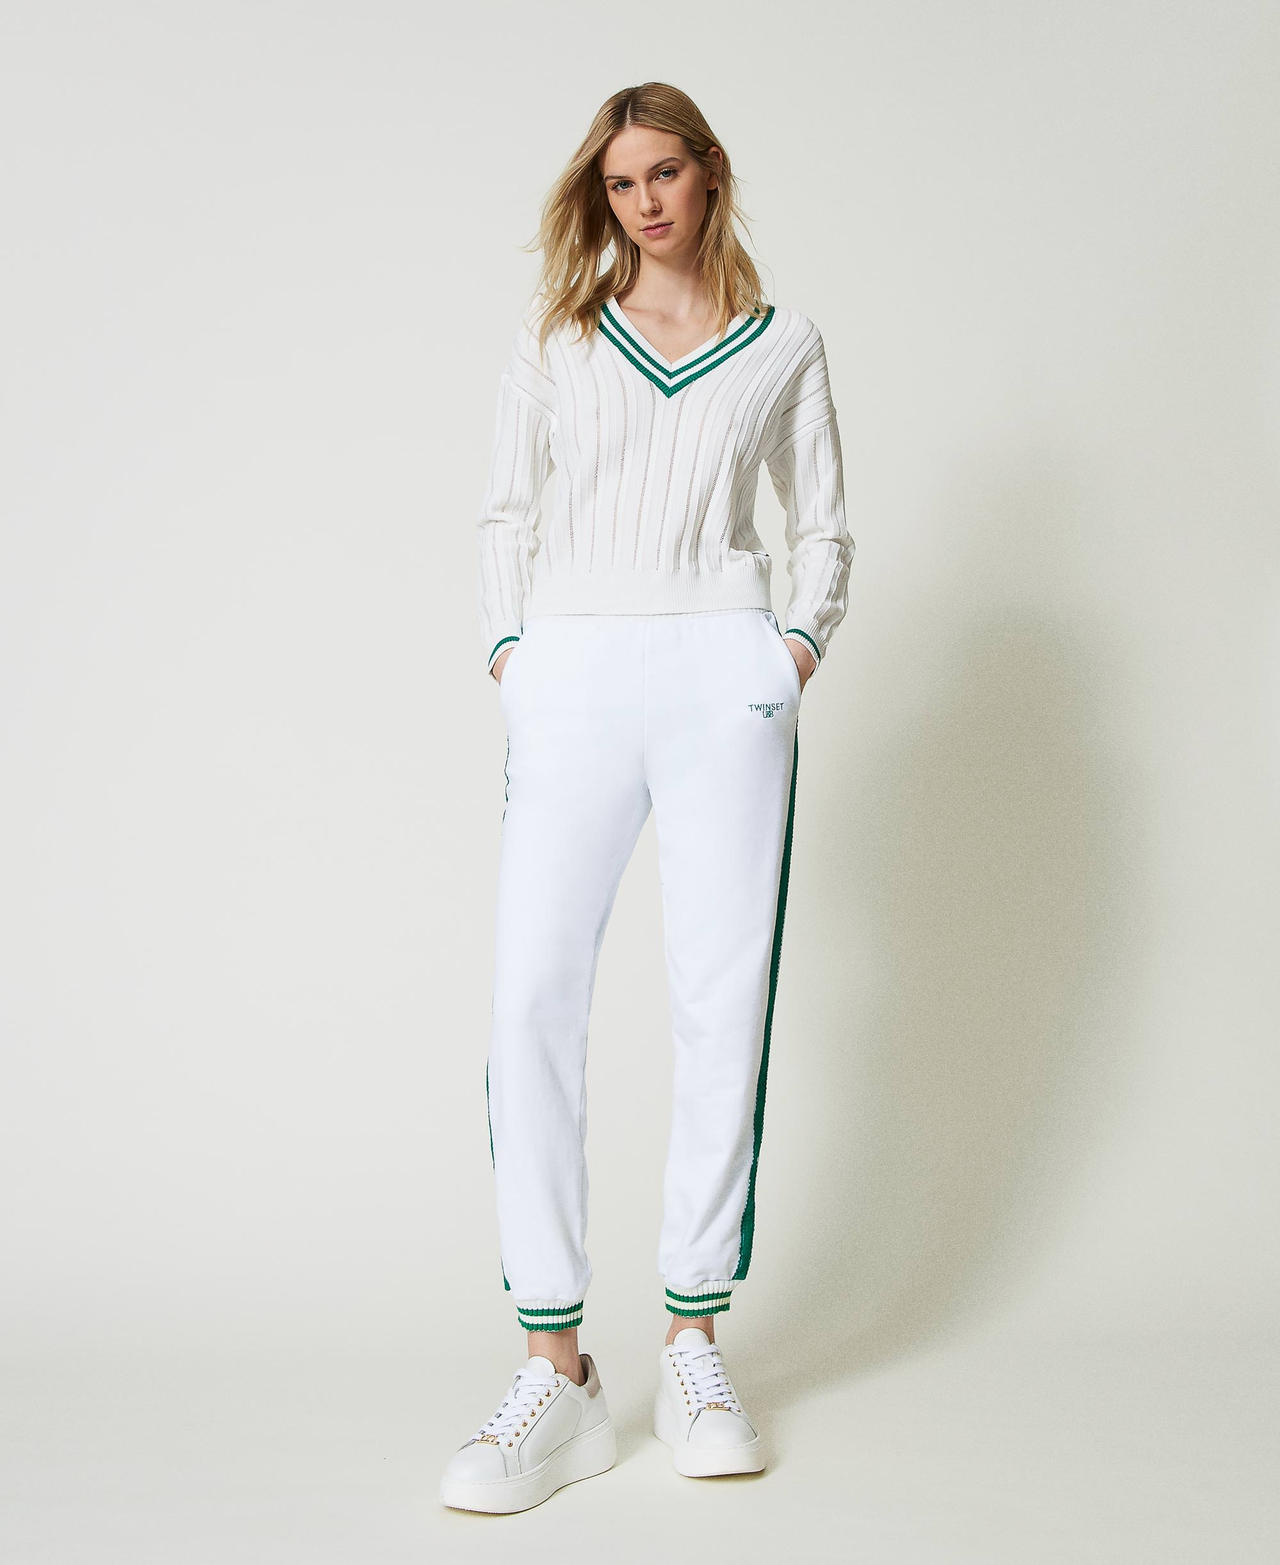 Pantalon de jogging en molleton avec rayures Bicolore Blanc Cassé/Vert « Alpine Green » Femme 241LL2QJJ-02